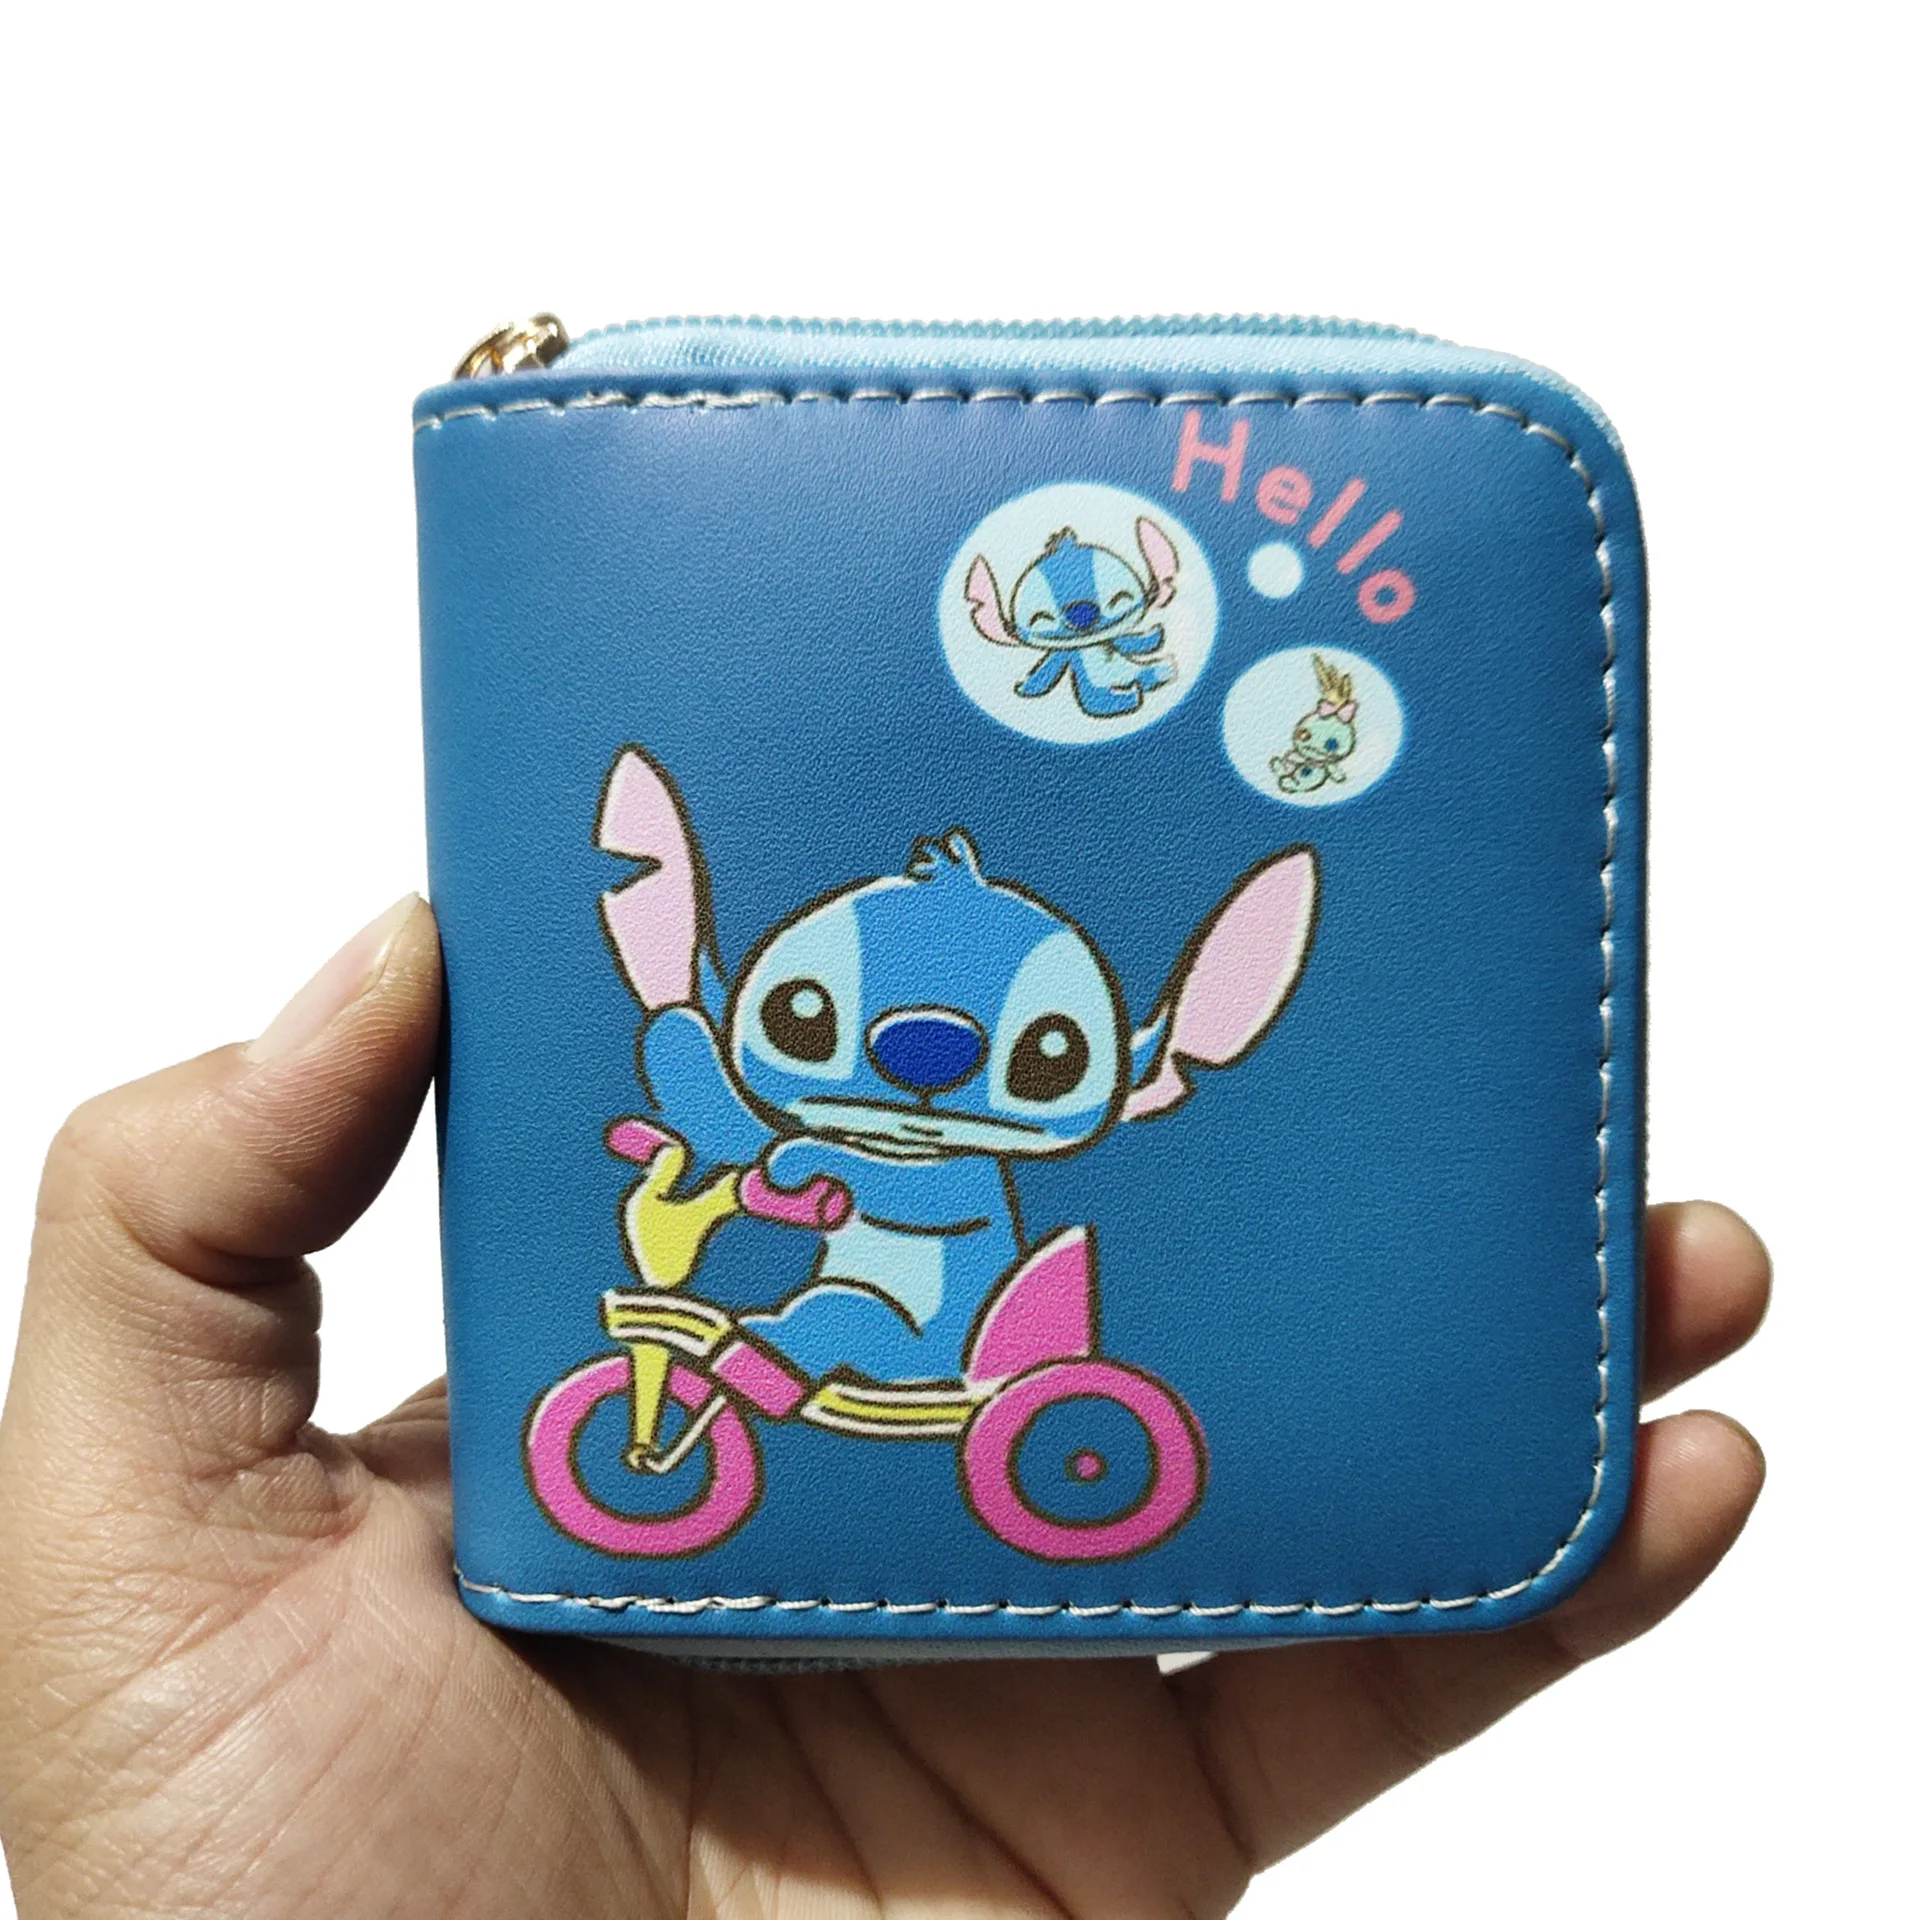 Disney Cars wallet Blue Children Boys Girls Wallet Kids Cartoon Coin Purse 